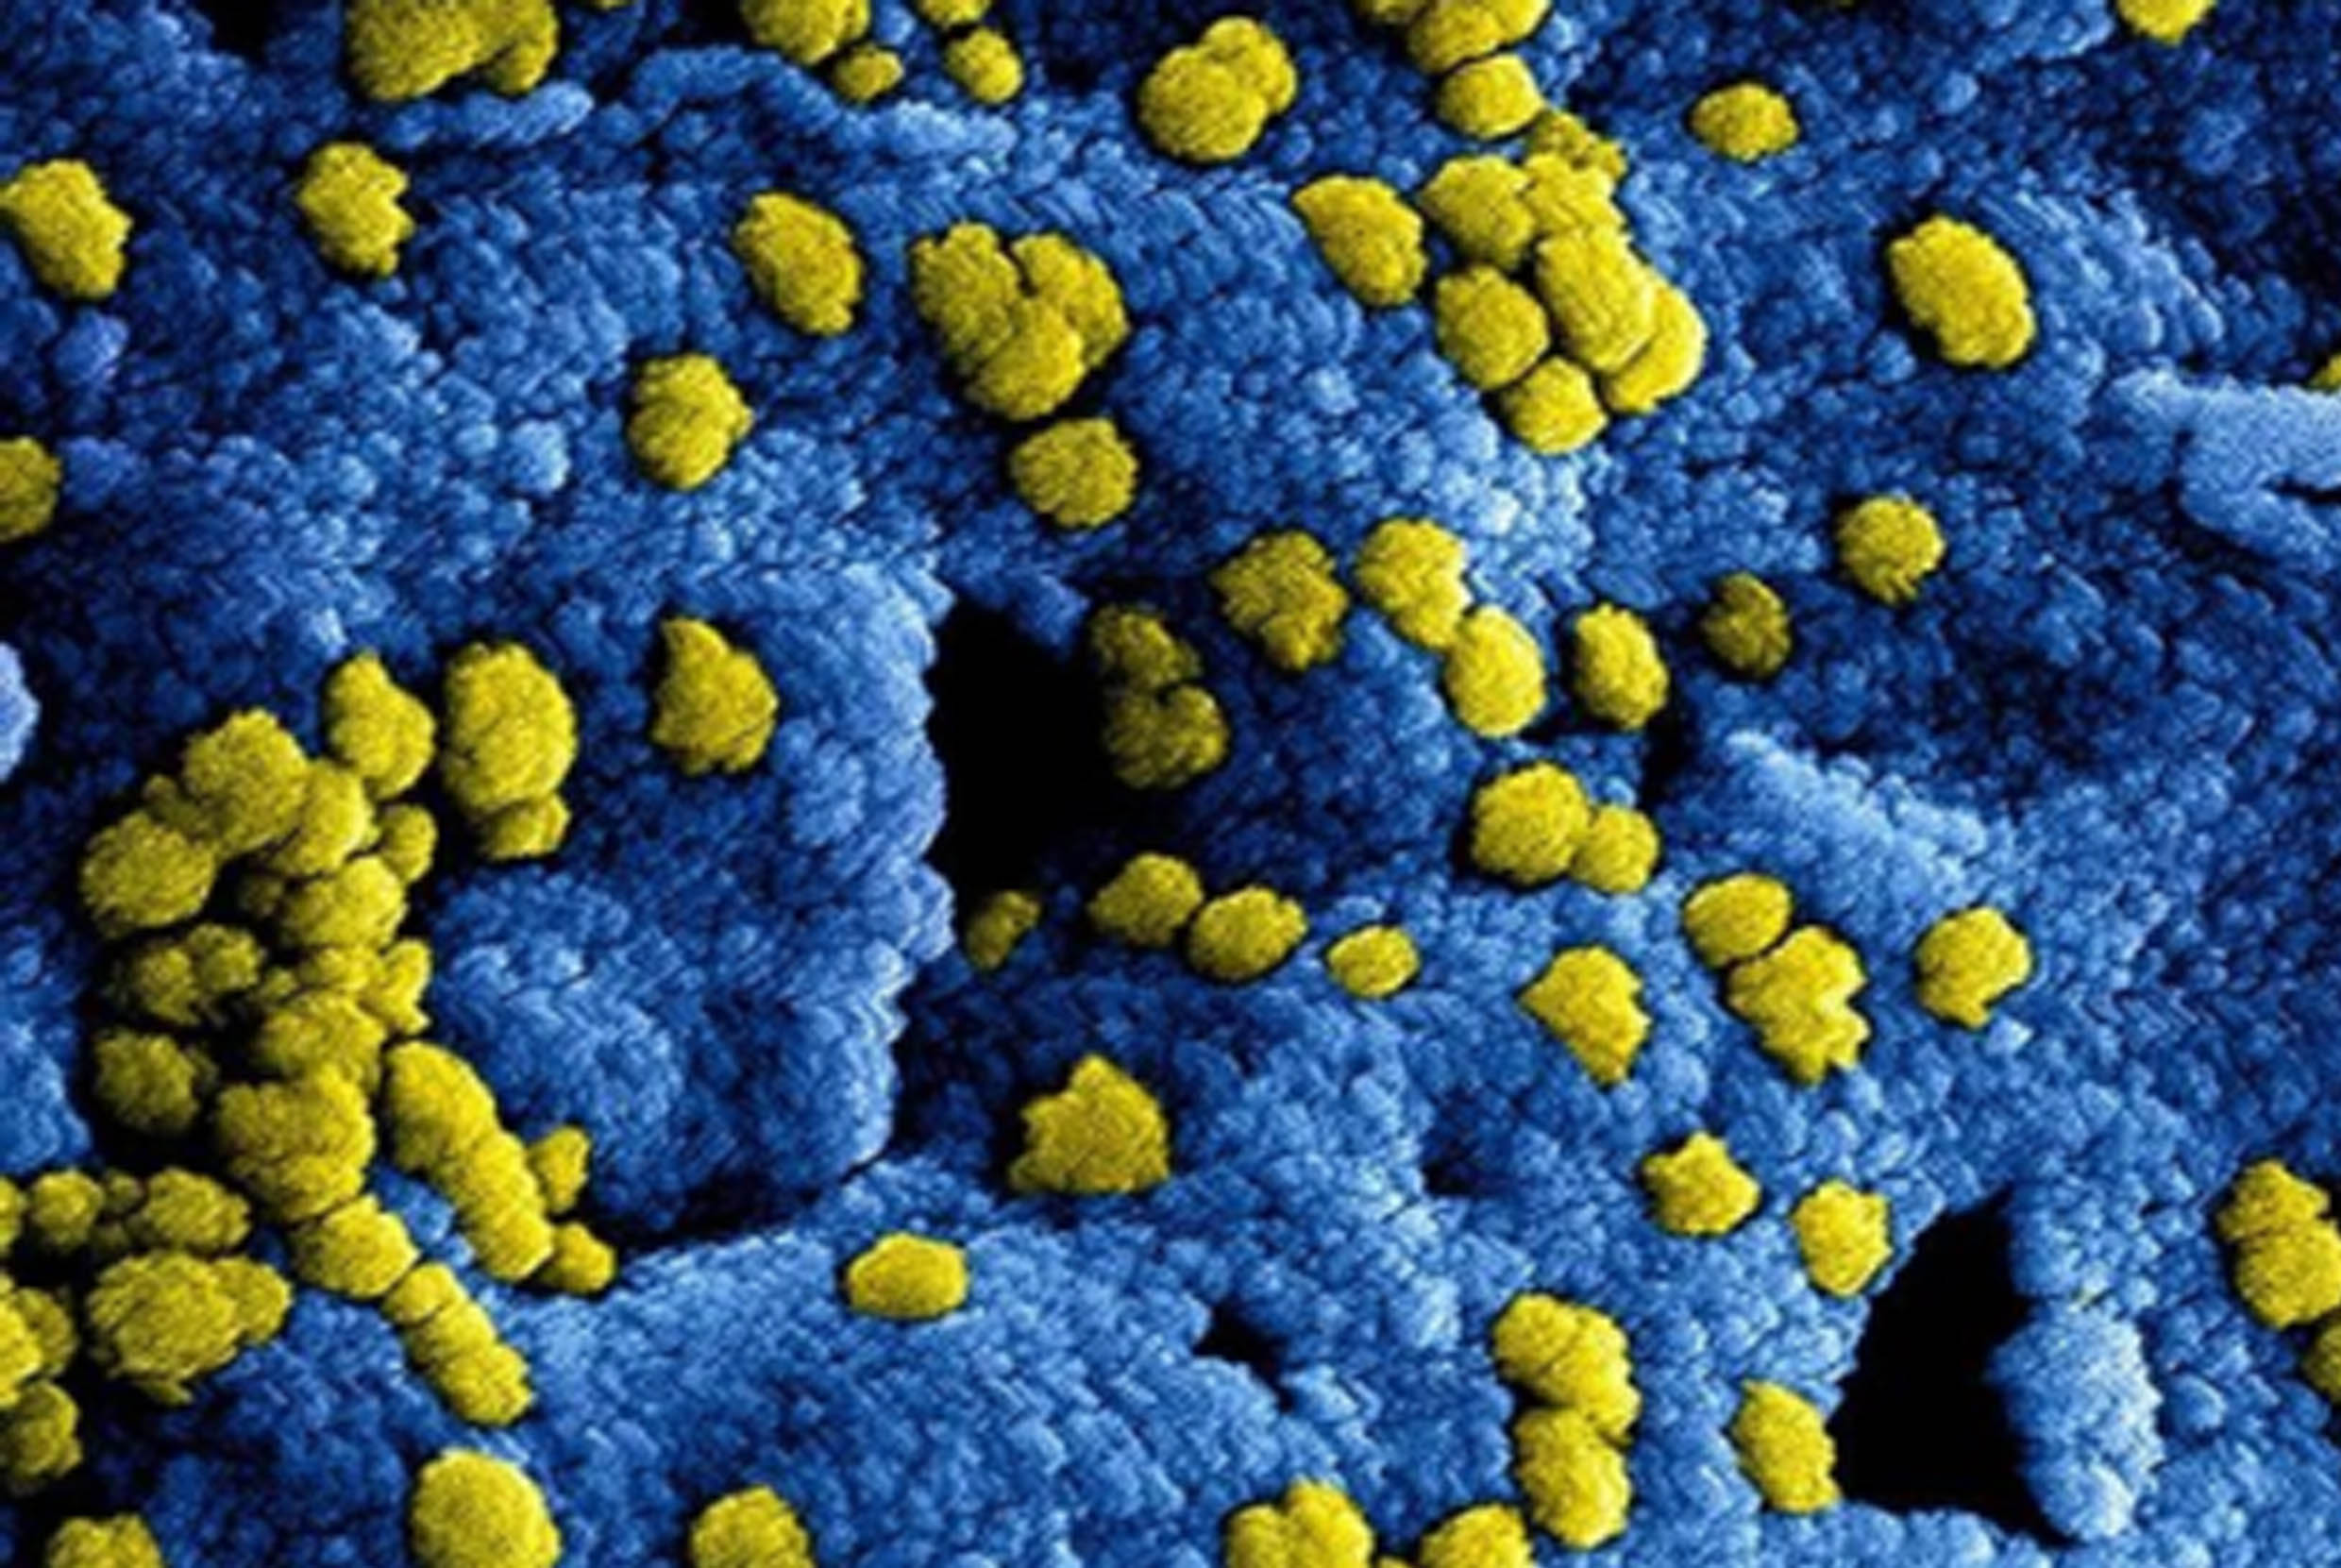 Retransmisión: Coronavirus de Wuhan ¿qué sabemos hasta ahora?